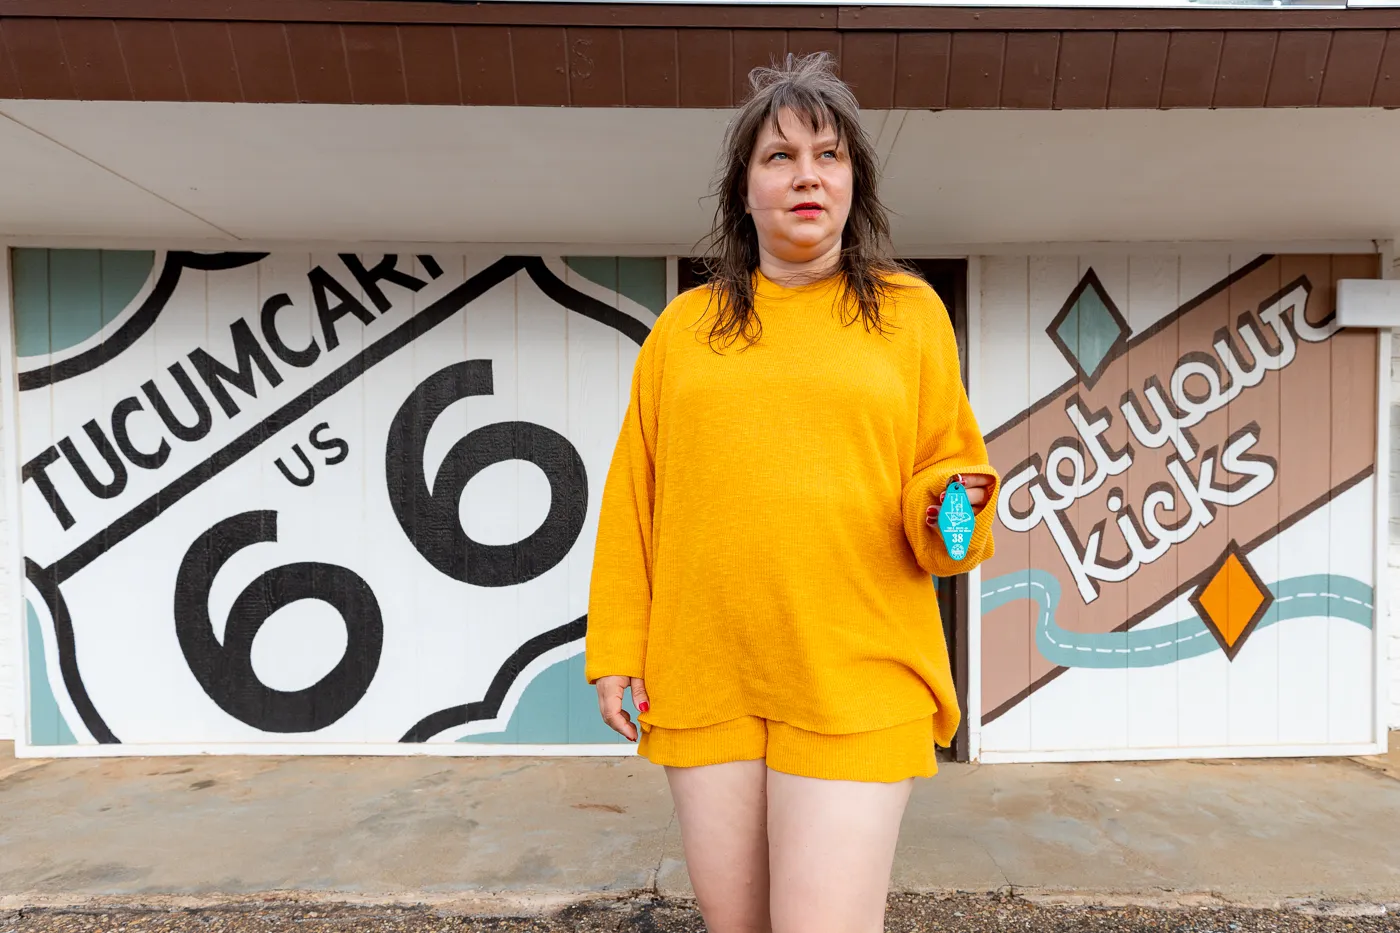 Get Your Kicks Route 66 Mural at Motel Safari in Tucumcari, New Mexico (Route 66 Motel)